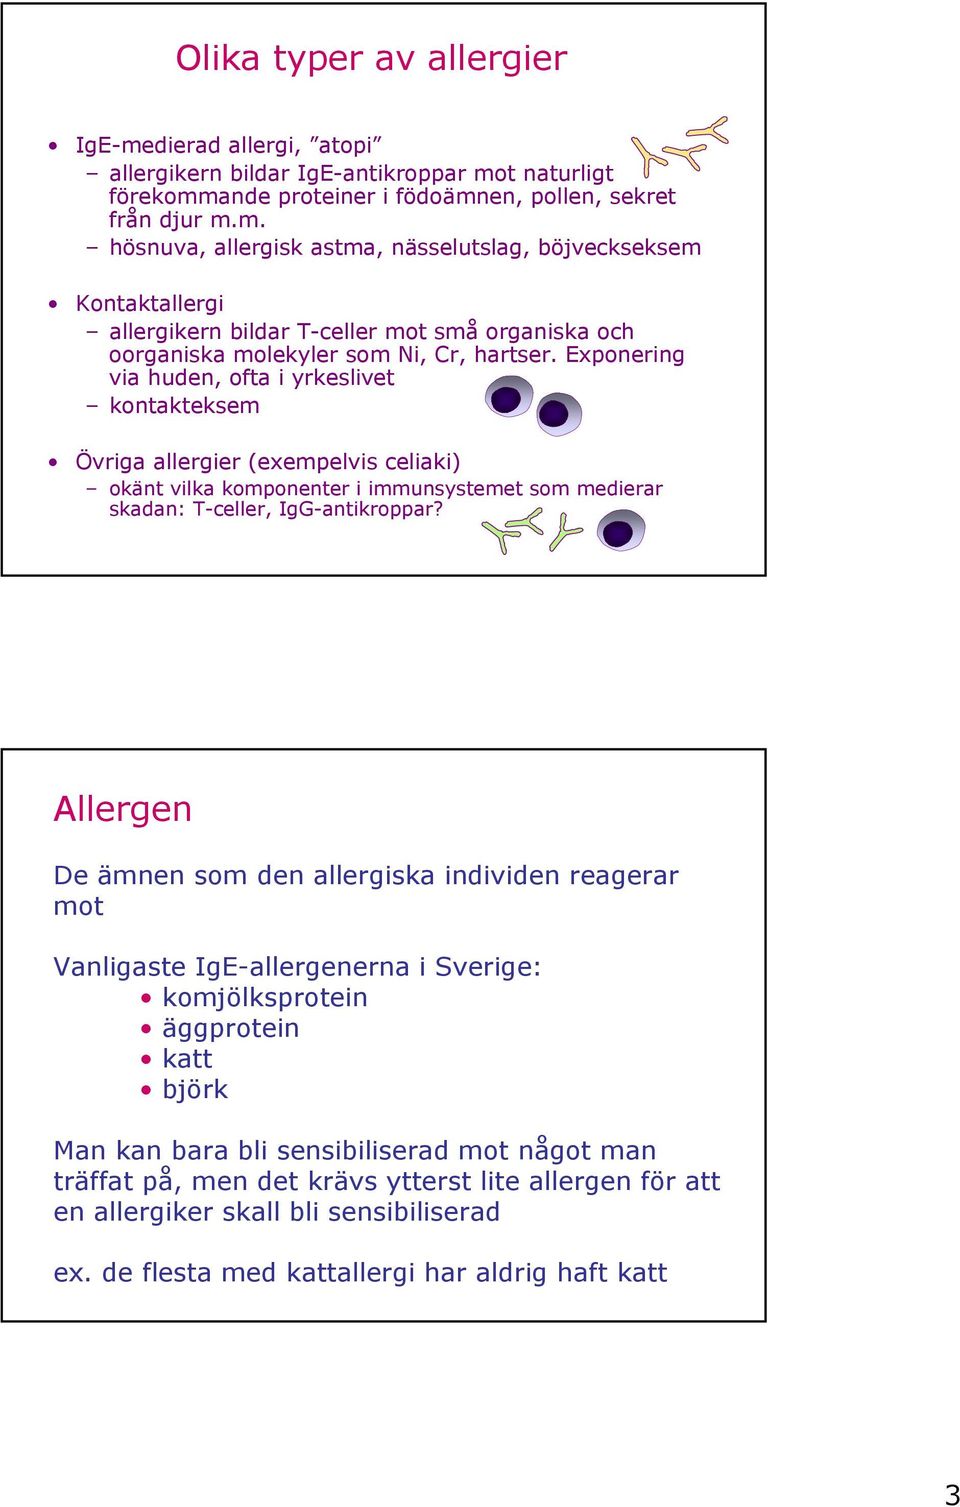 Allergen De ämnen som den allergiska individen reagerar mot Vanligaste IgE-allergenerna i Sverige: komjölksprotein äggprotein katt björk Man kan bara bli sensibiliserad mot något man träffat på, men